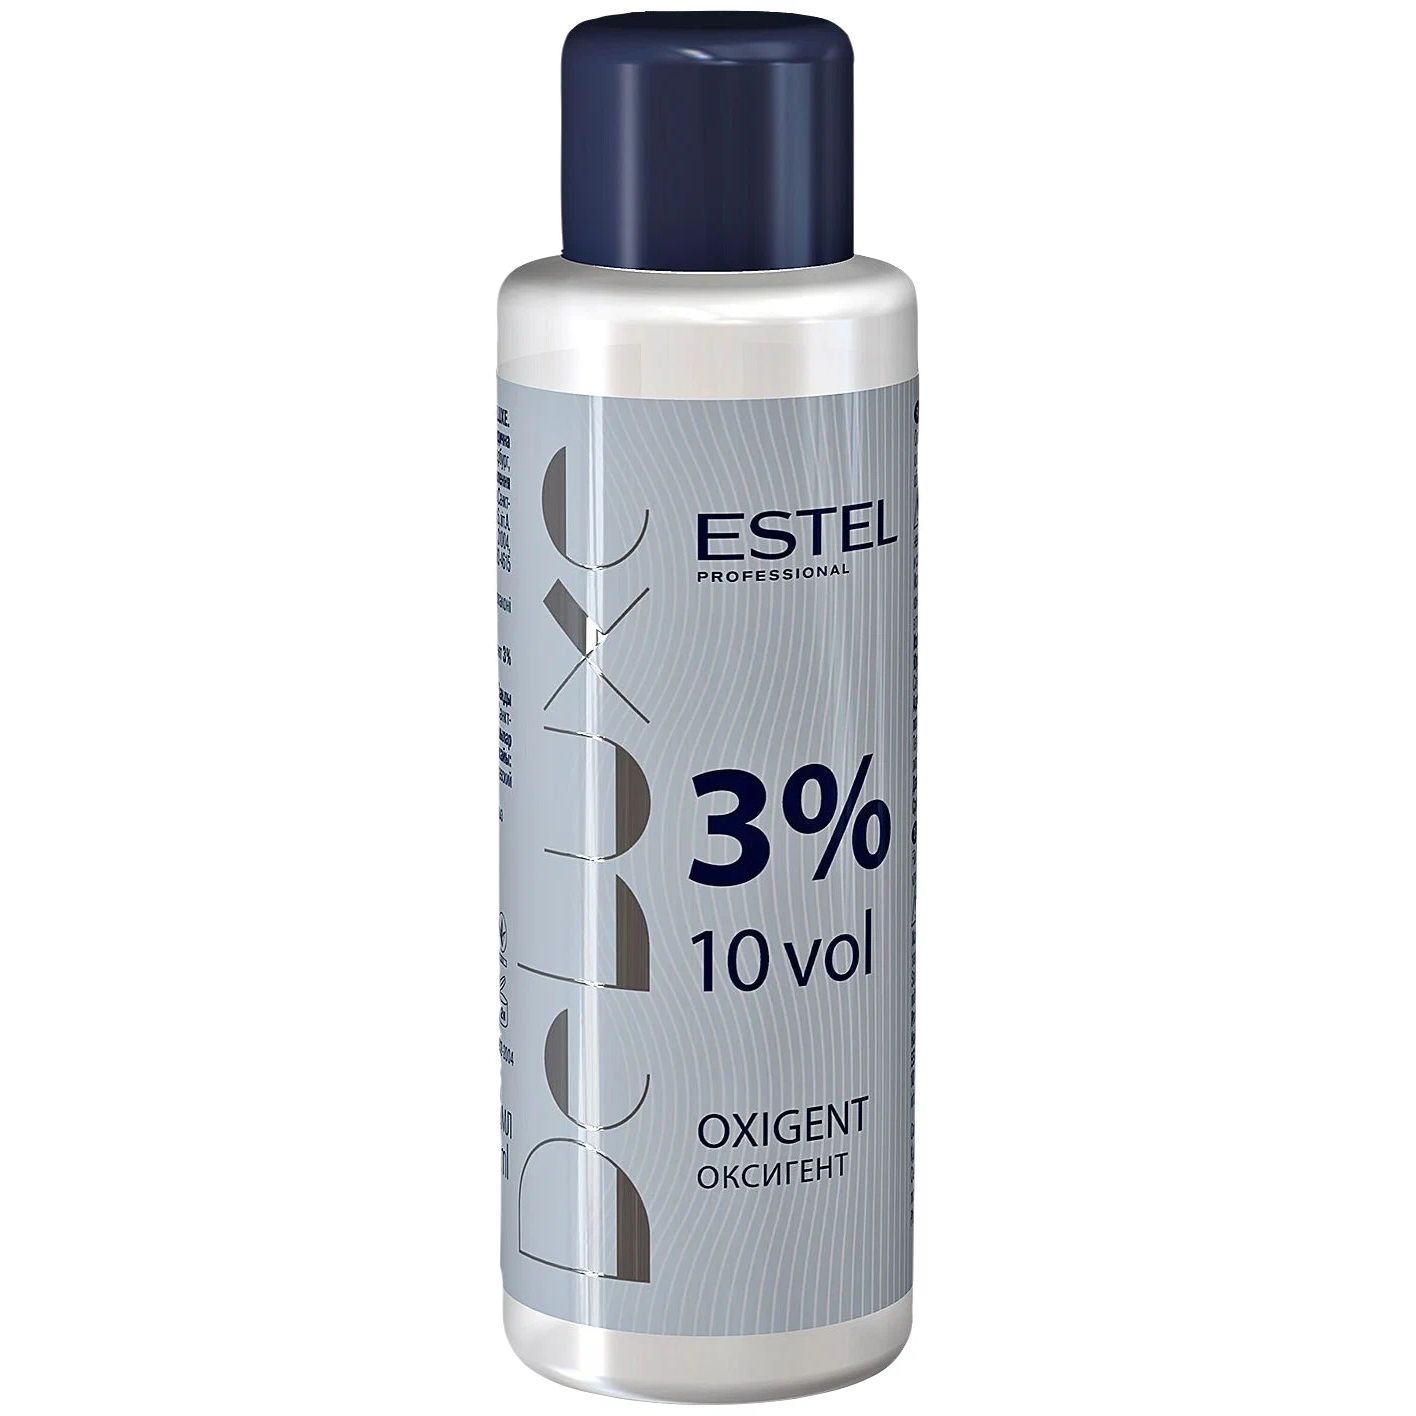 Проявитель Estel Professional De Luxe Oxigent 3% 60 мл проявитель estel professional de luxe activator 1 5% 900 мл